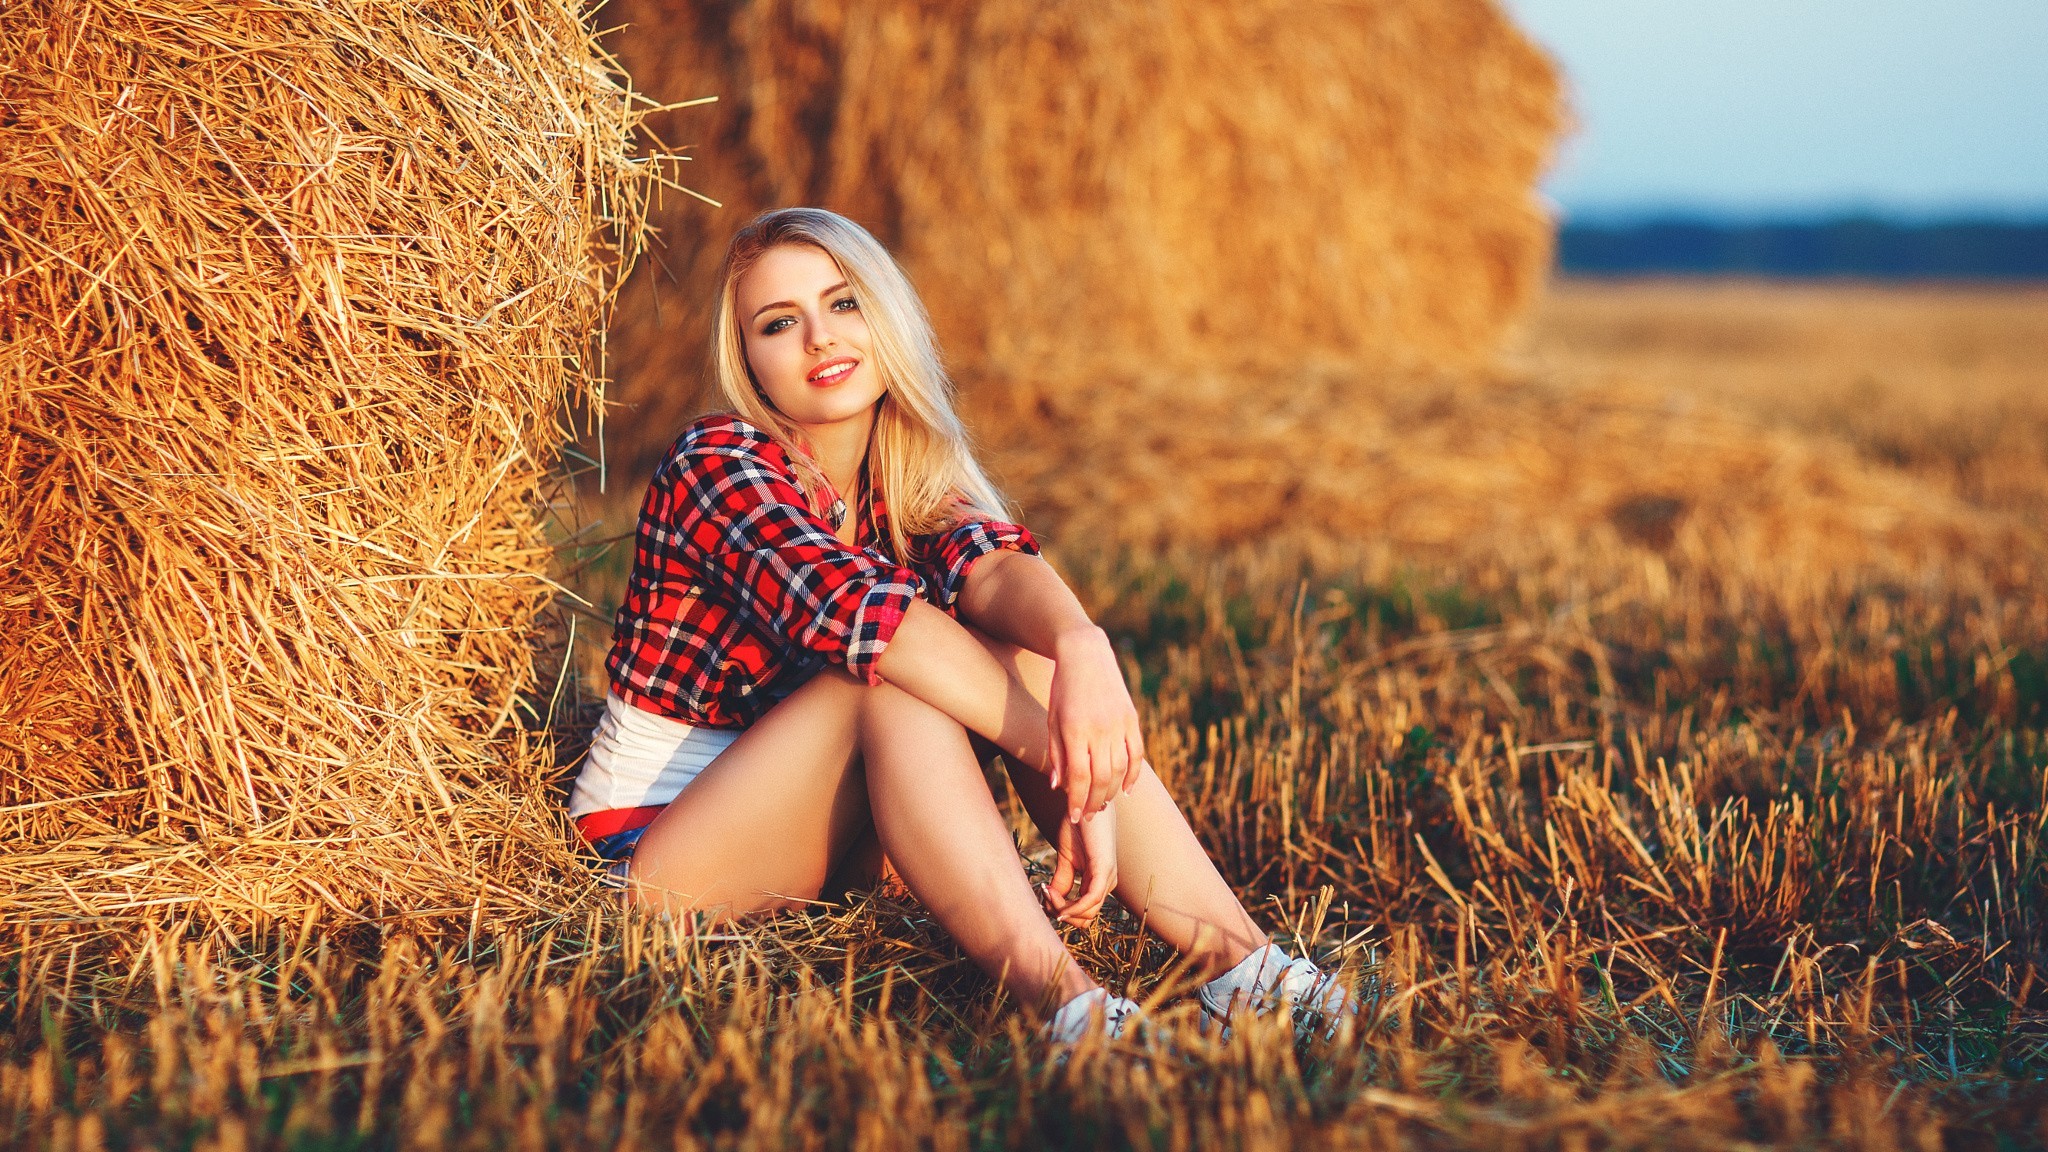 Девушка возле снопа сена